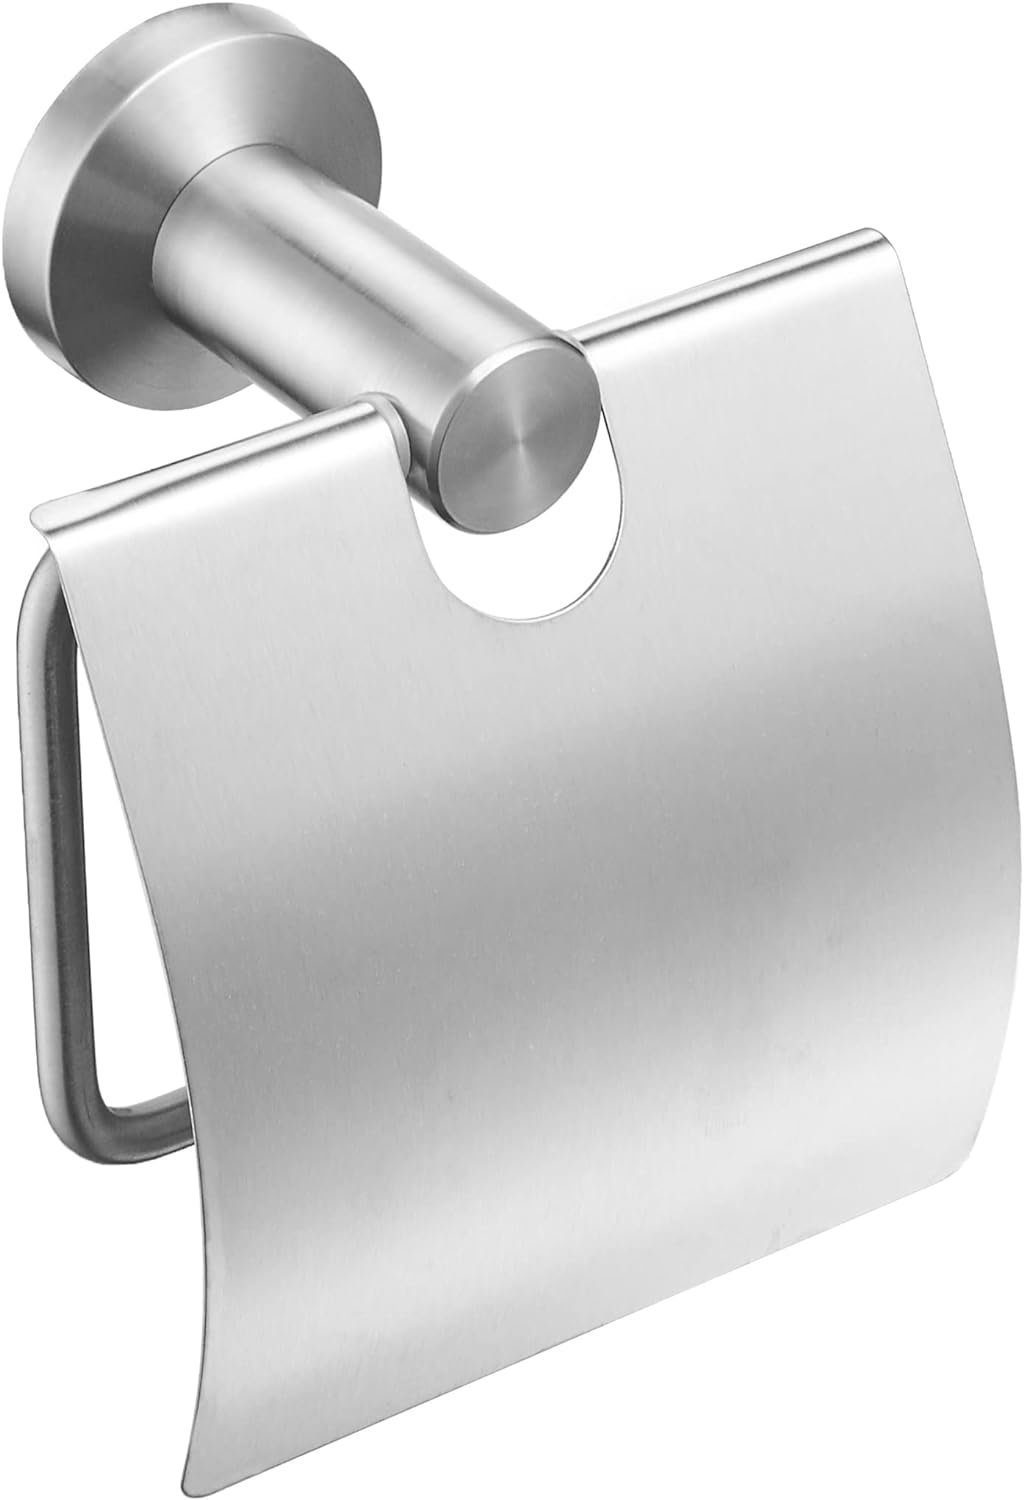 Coonoor Toilettenpapierhalter Toilettenpapierhalter mit Ablage Silber